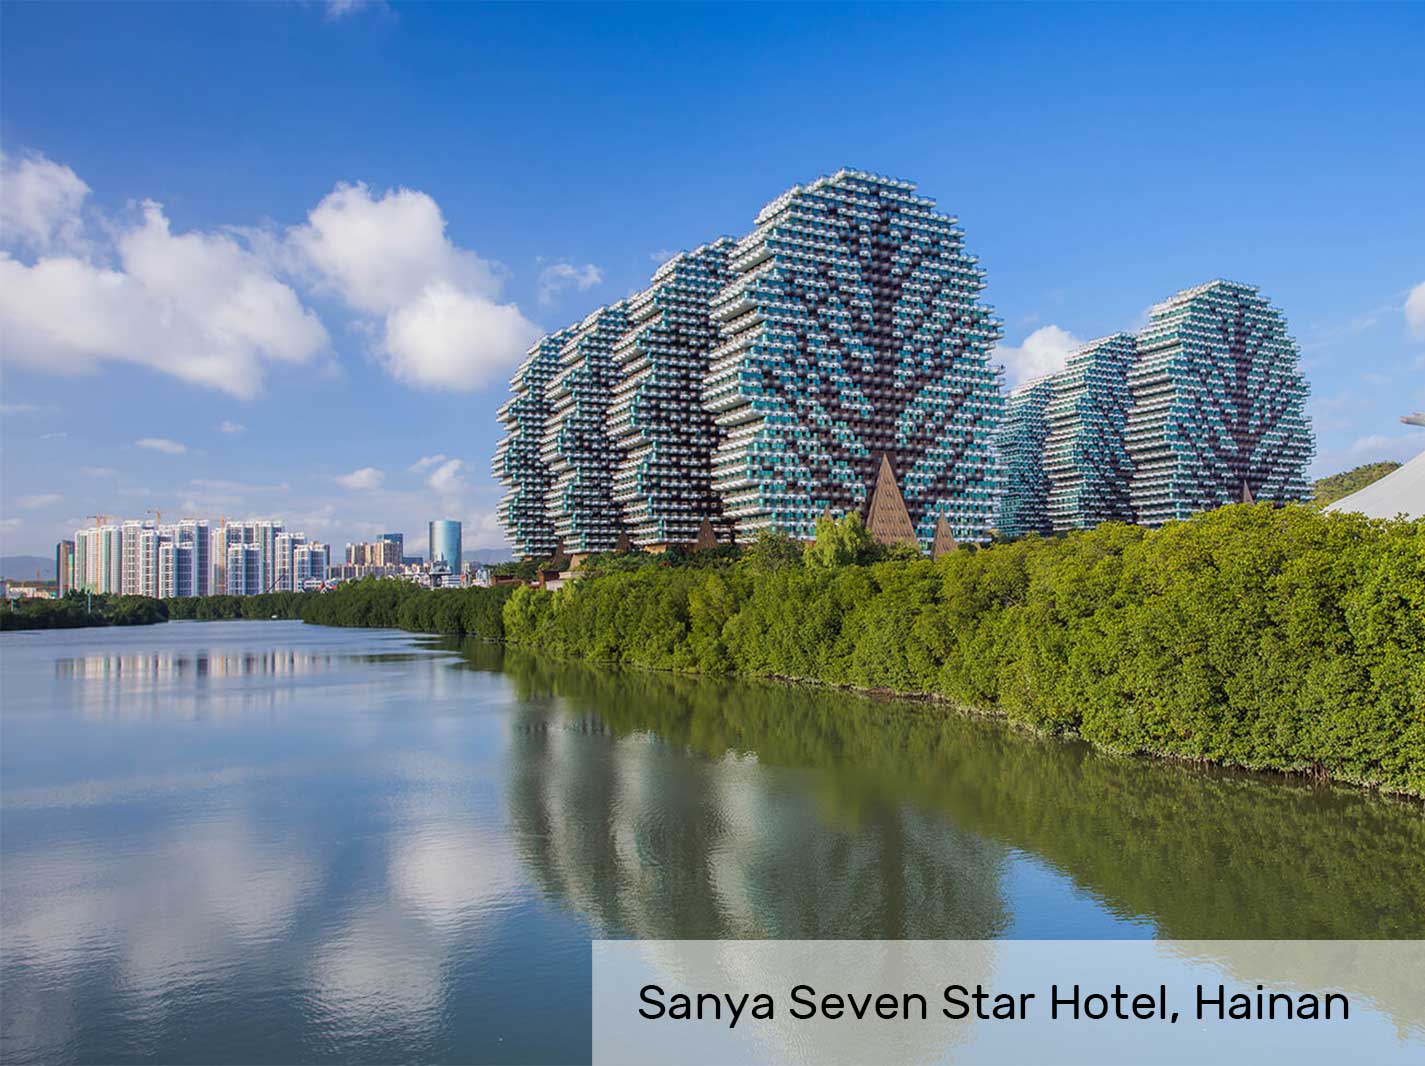 Sanya Seven Star Hotel, Hainan